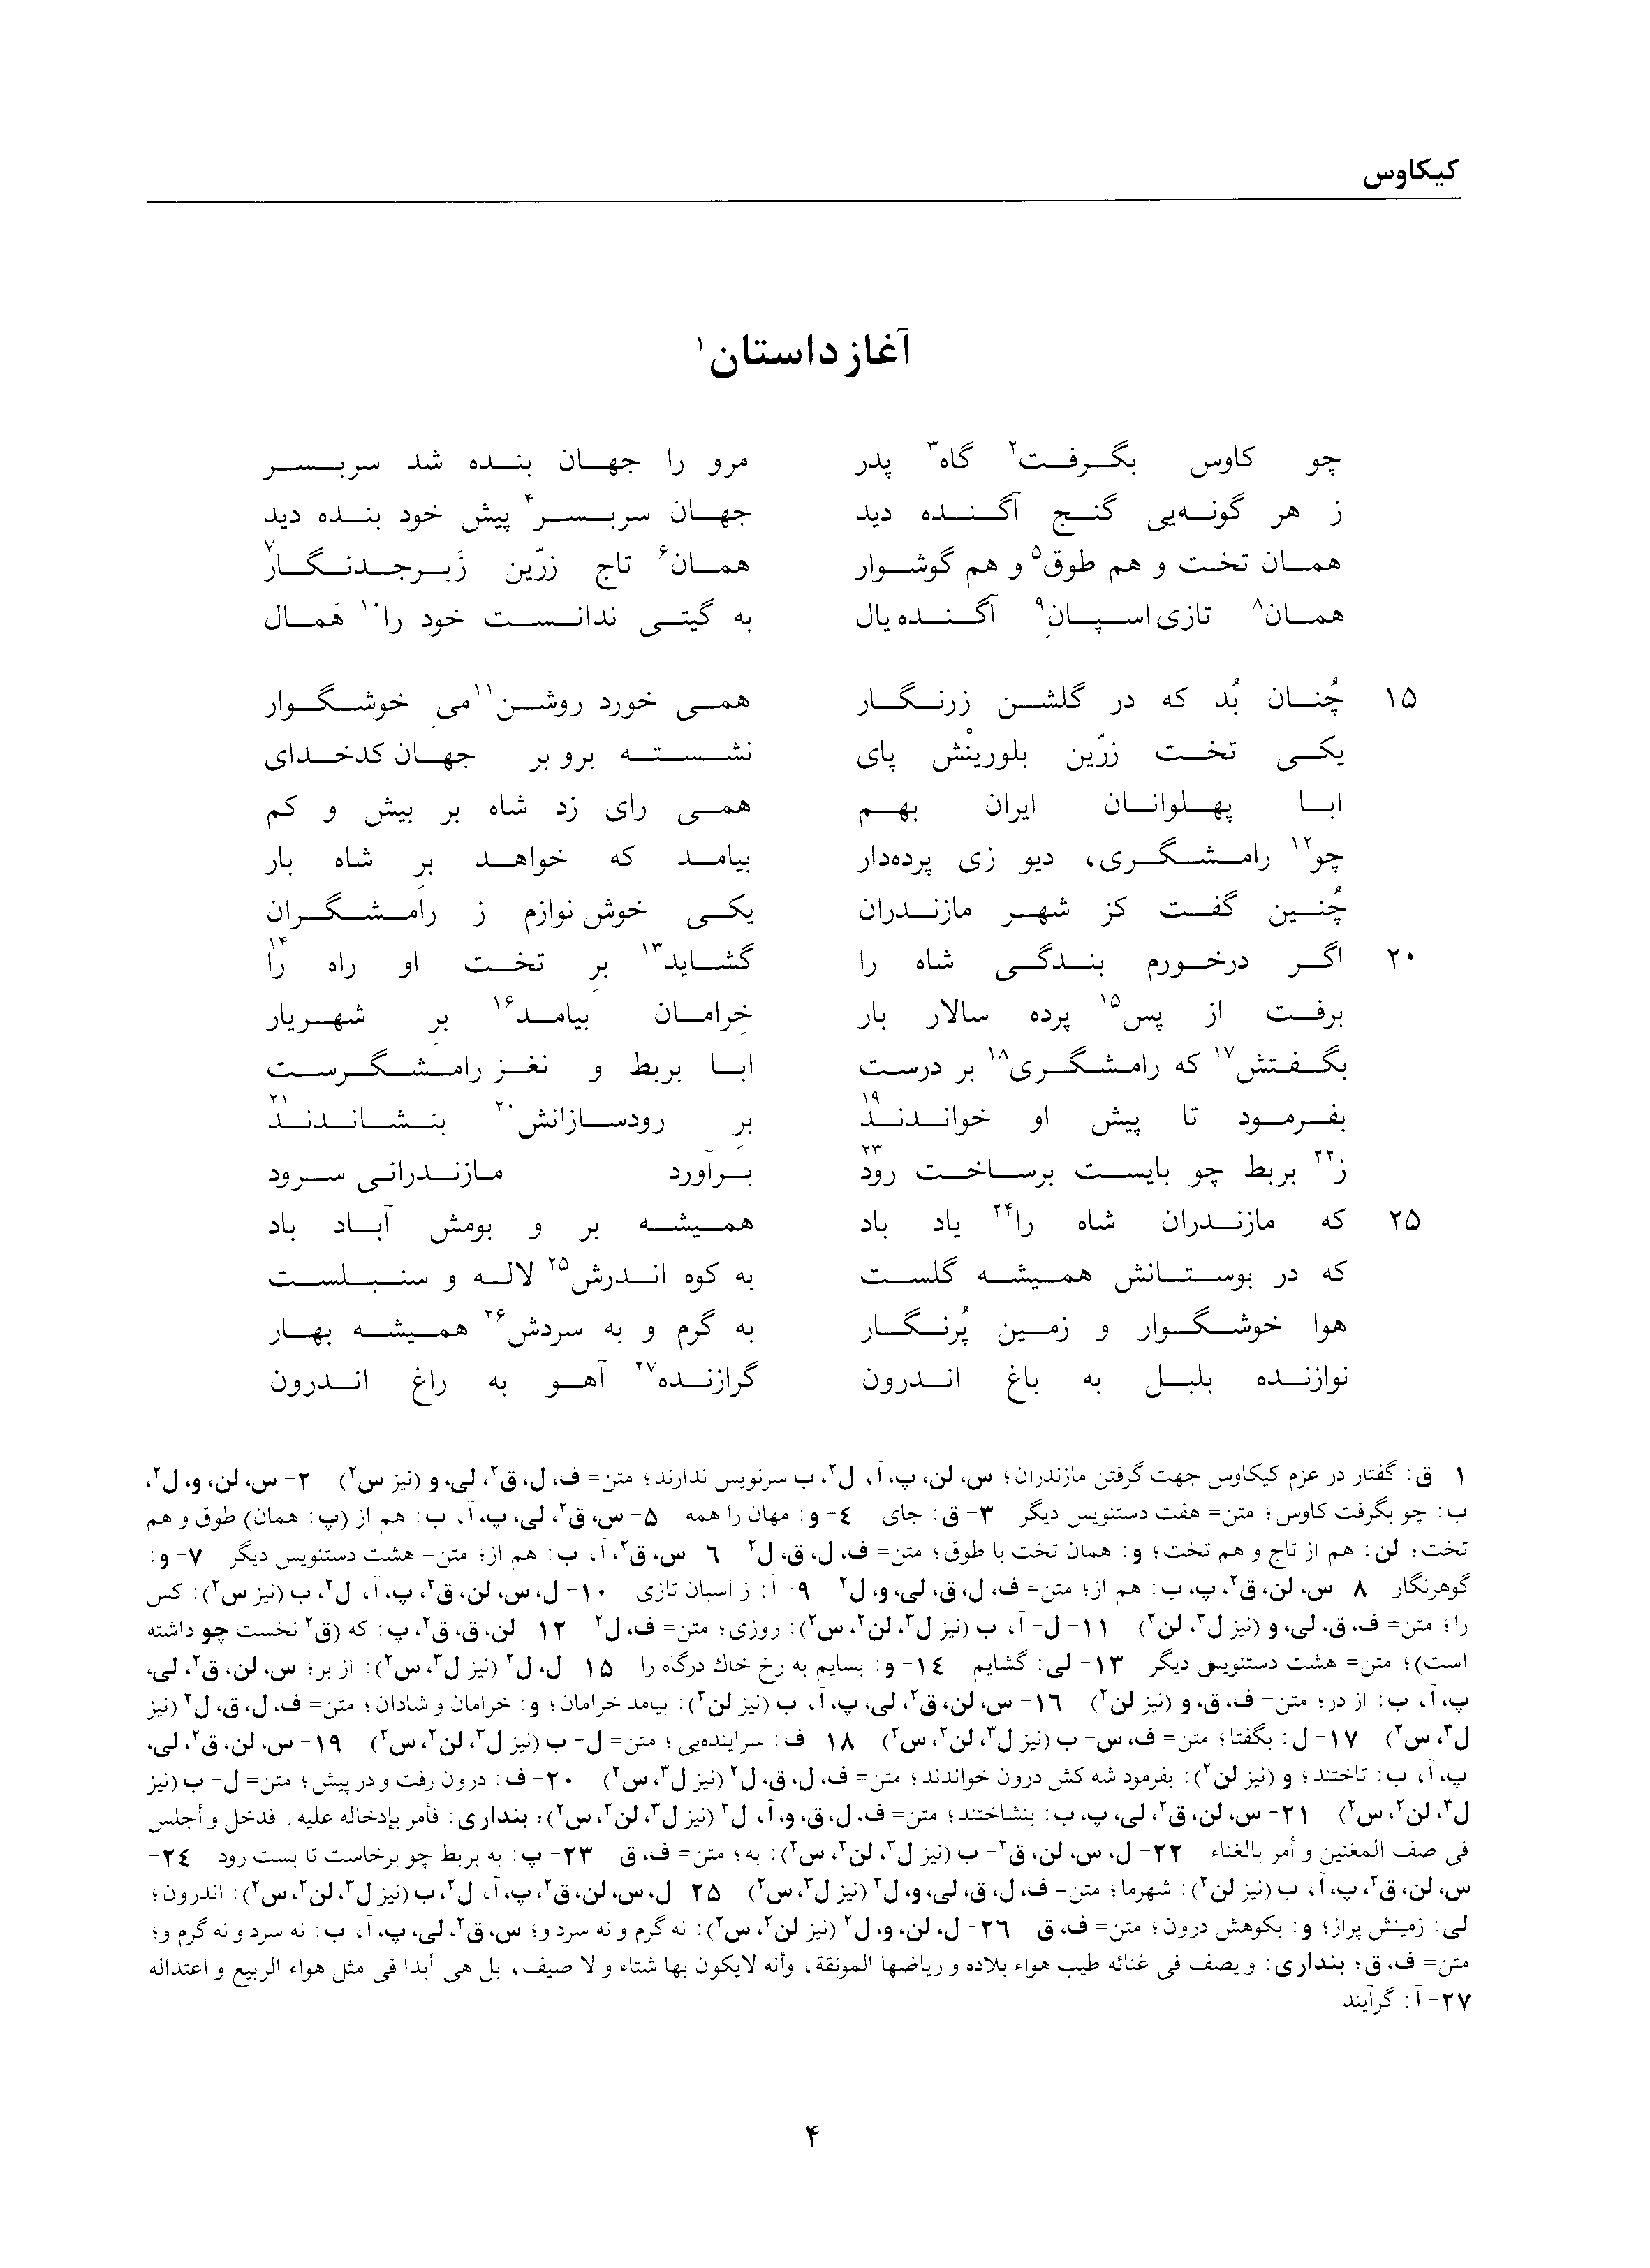 vol. 2, p. 4